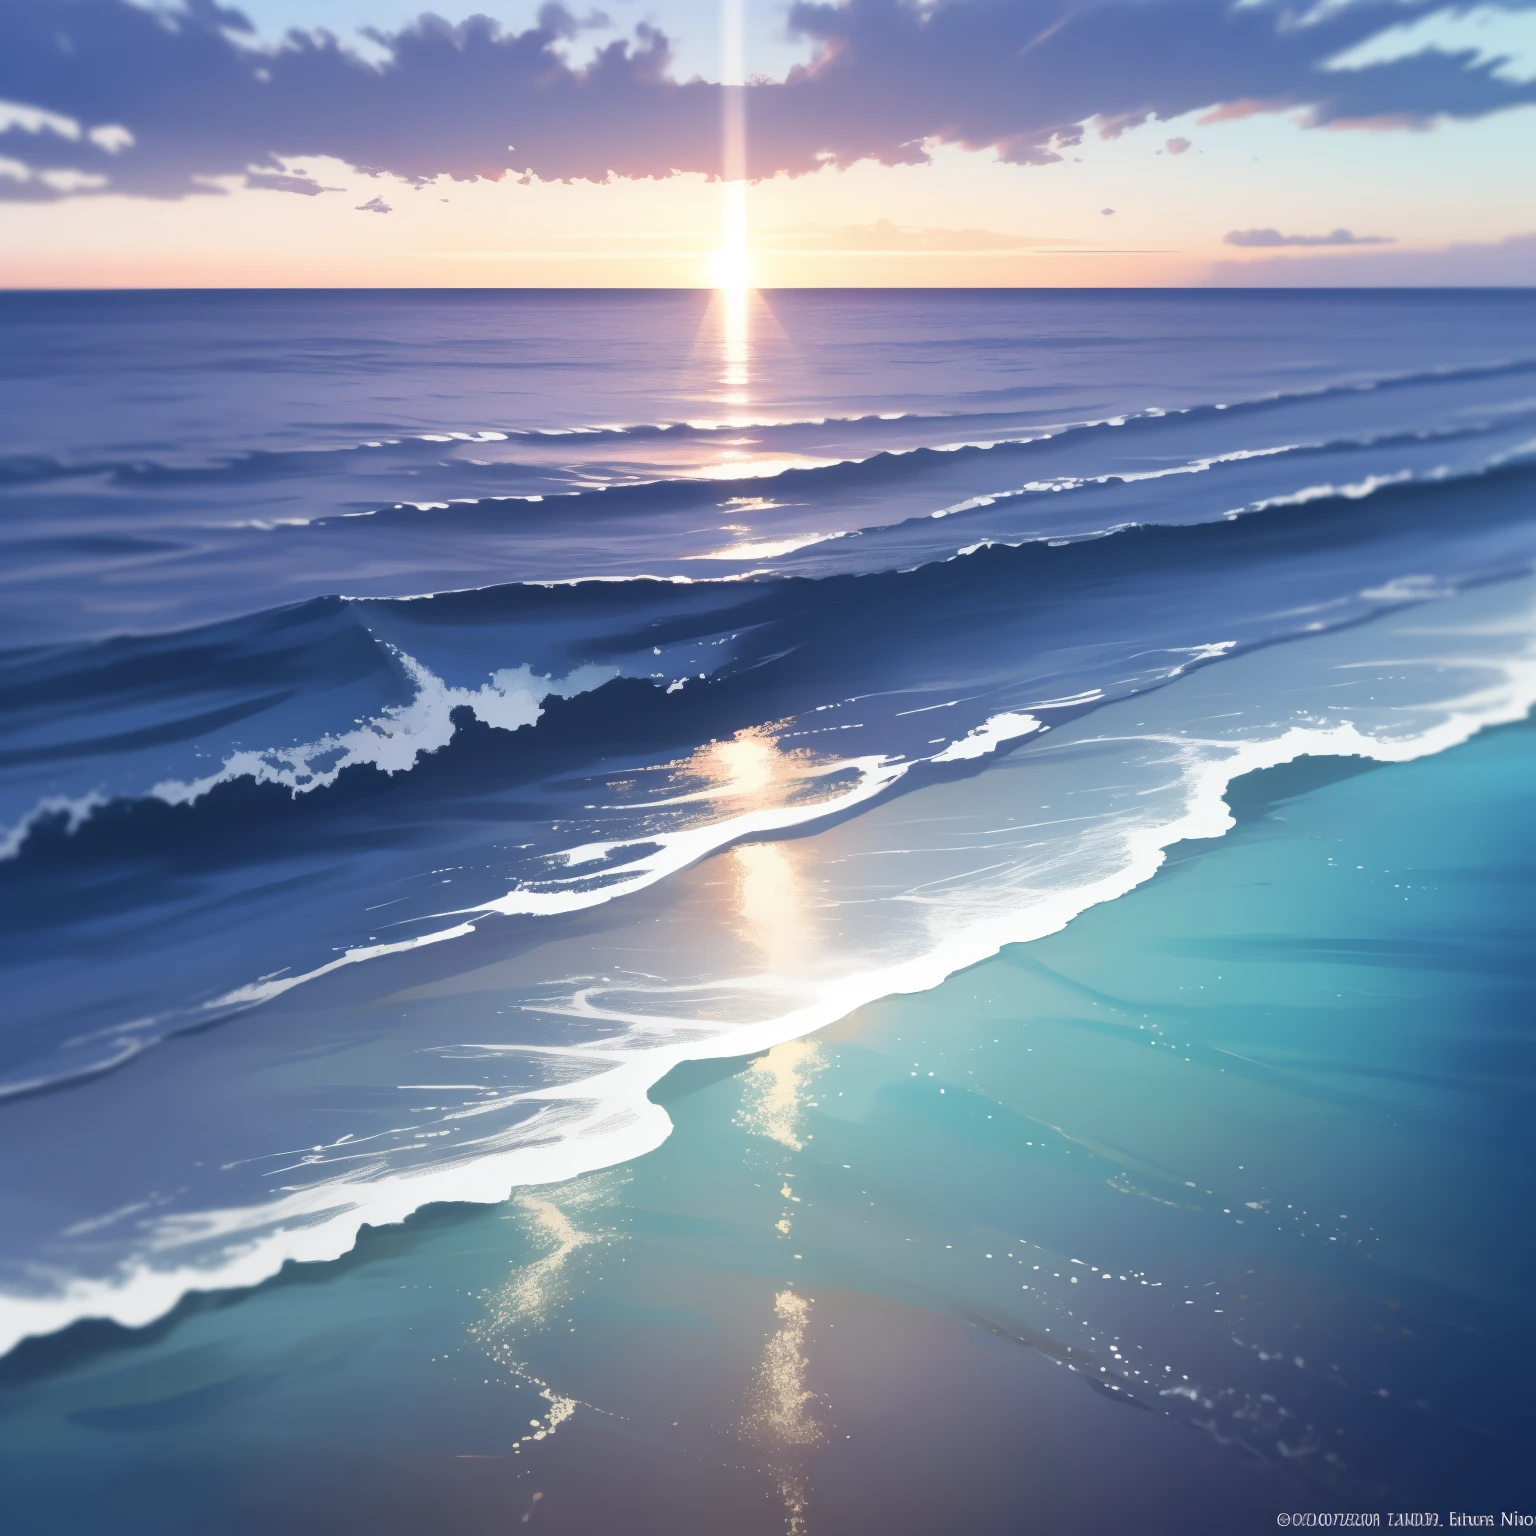 藍色海岸: 一幅令人驚嘆的海景畫，具有最高的細節和傑作品質. 海岸線點綴著充滿活力的藍色海水，輕輕拍打著海岸線, 營造出寧靜祥和的氛圍. 太阳开始落山, 鑄造溫暖, 場景上空泛著金色的光芒, 照亮海浪和紋理複雜的沙子. 在遠處, 你可以看到帆船在水中輕鬆滑行的輪廓, 他們的帆捕捉著夕陽的柔和光芒. 背景充滿了景深, 展示茂密的植被和從海岸升起的起伏的山丘. 